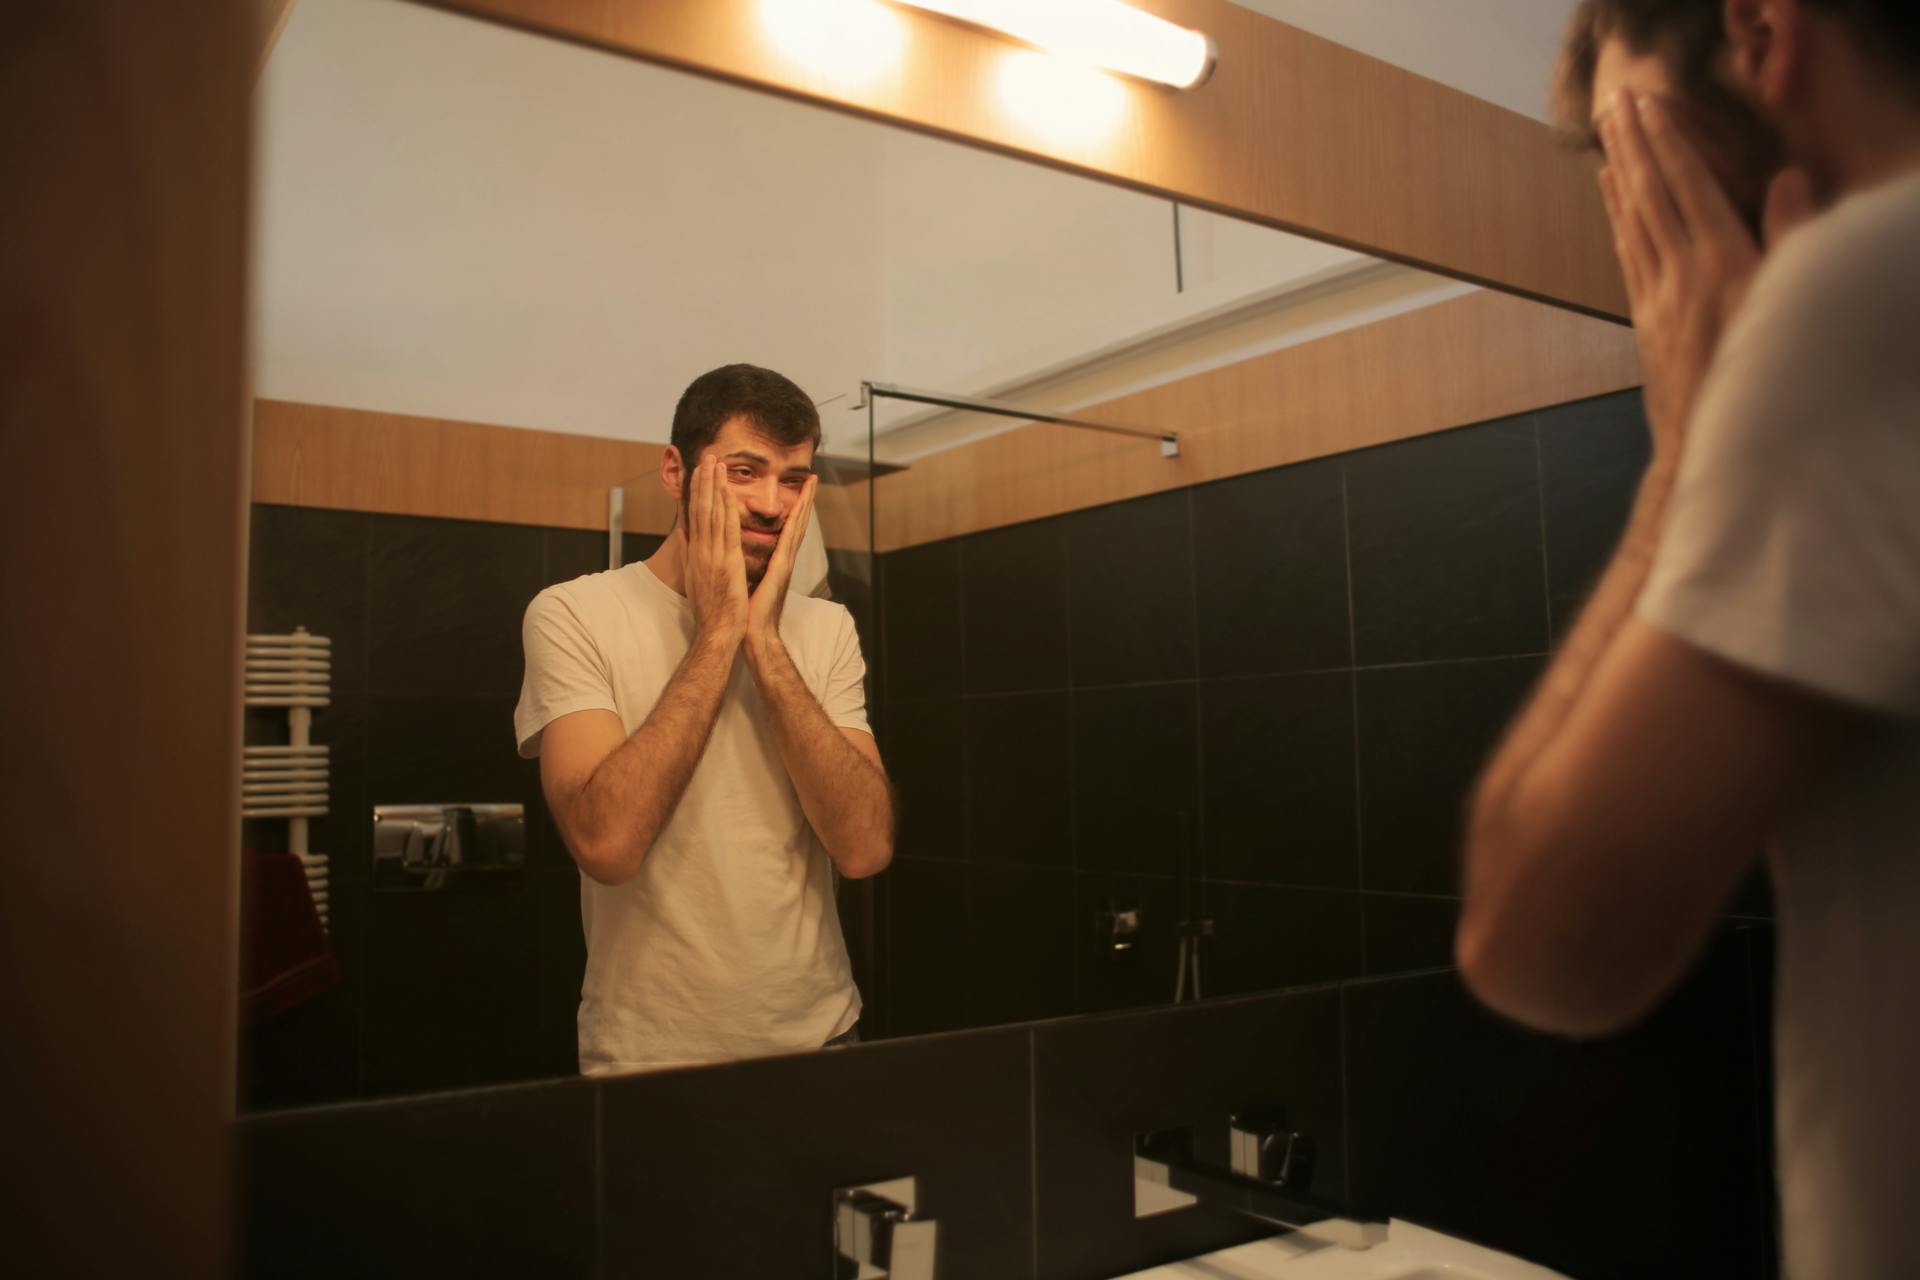 Un homme fatigué se regardant dans le miroir d'une salle de bain | Source : Pexels